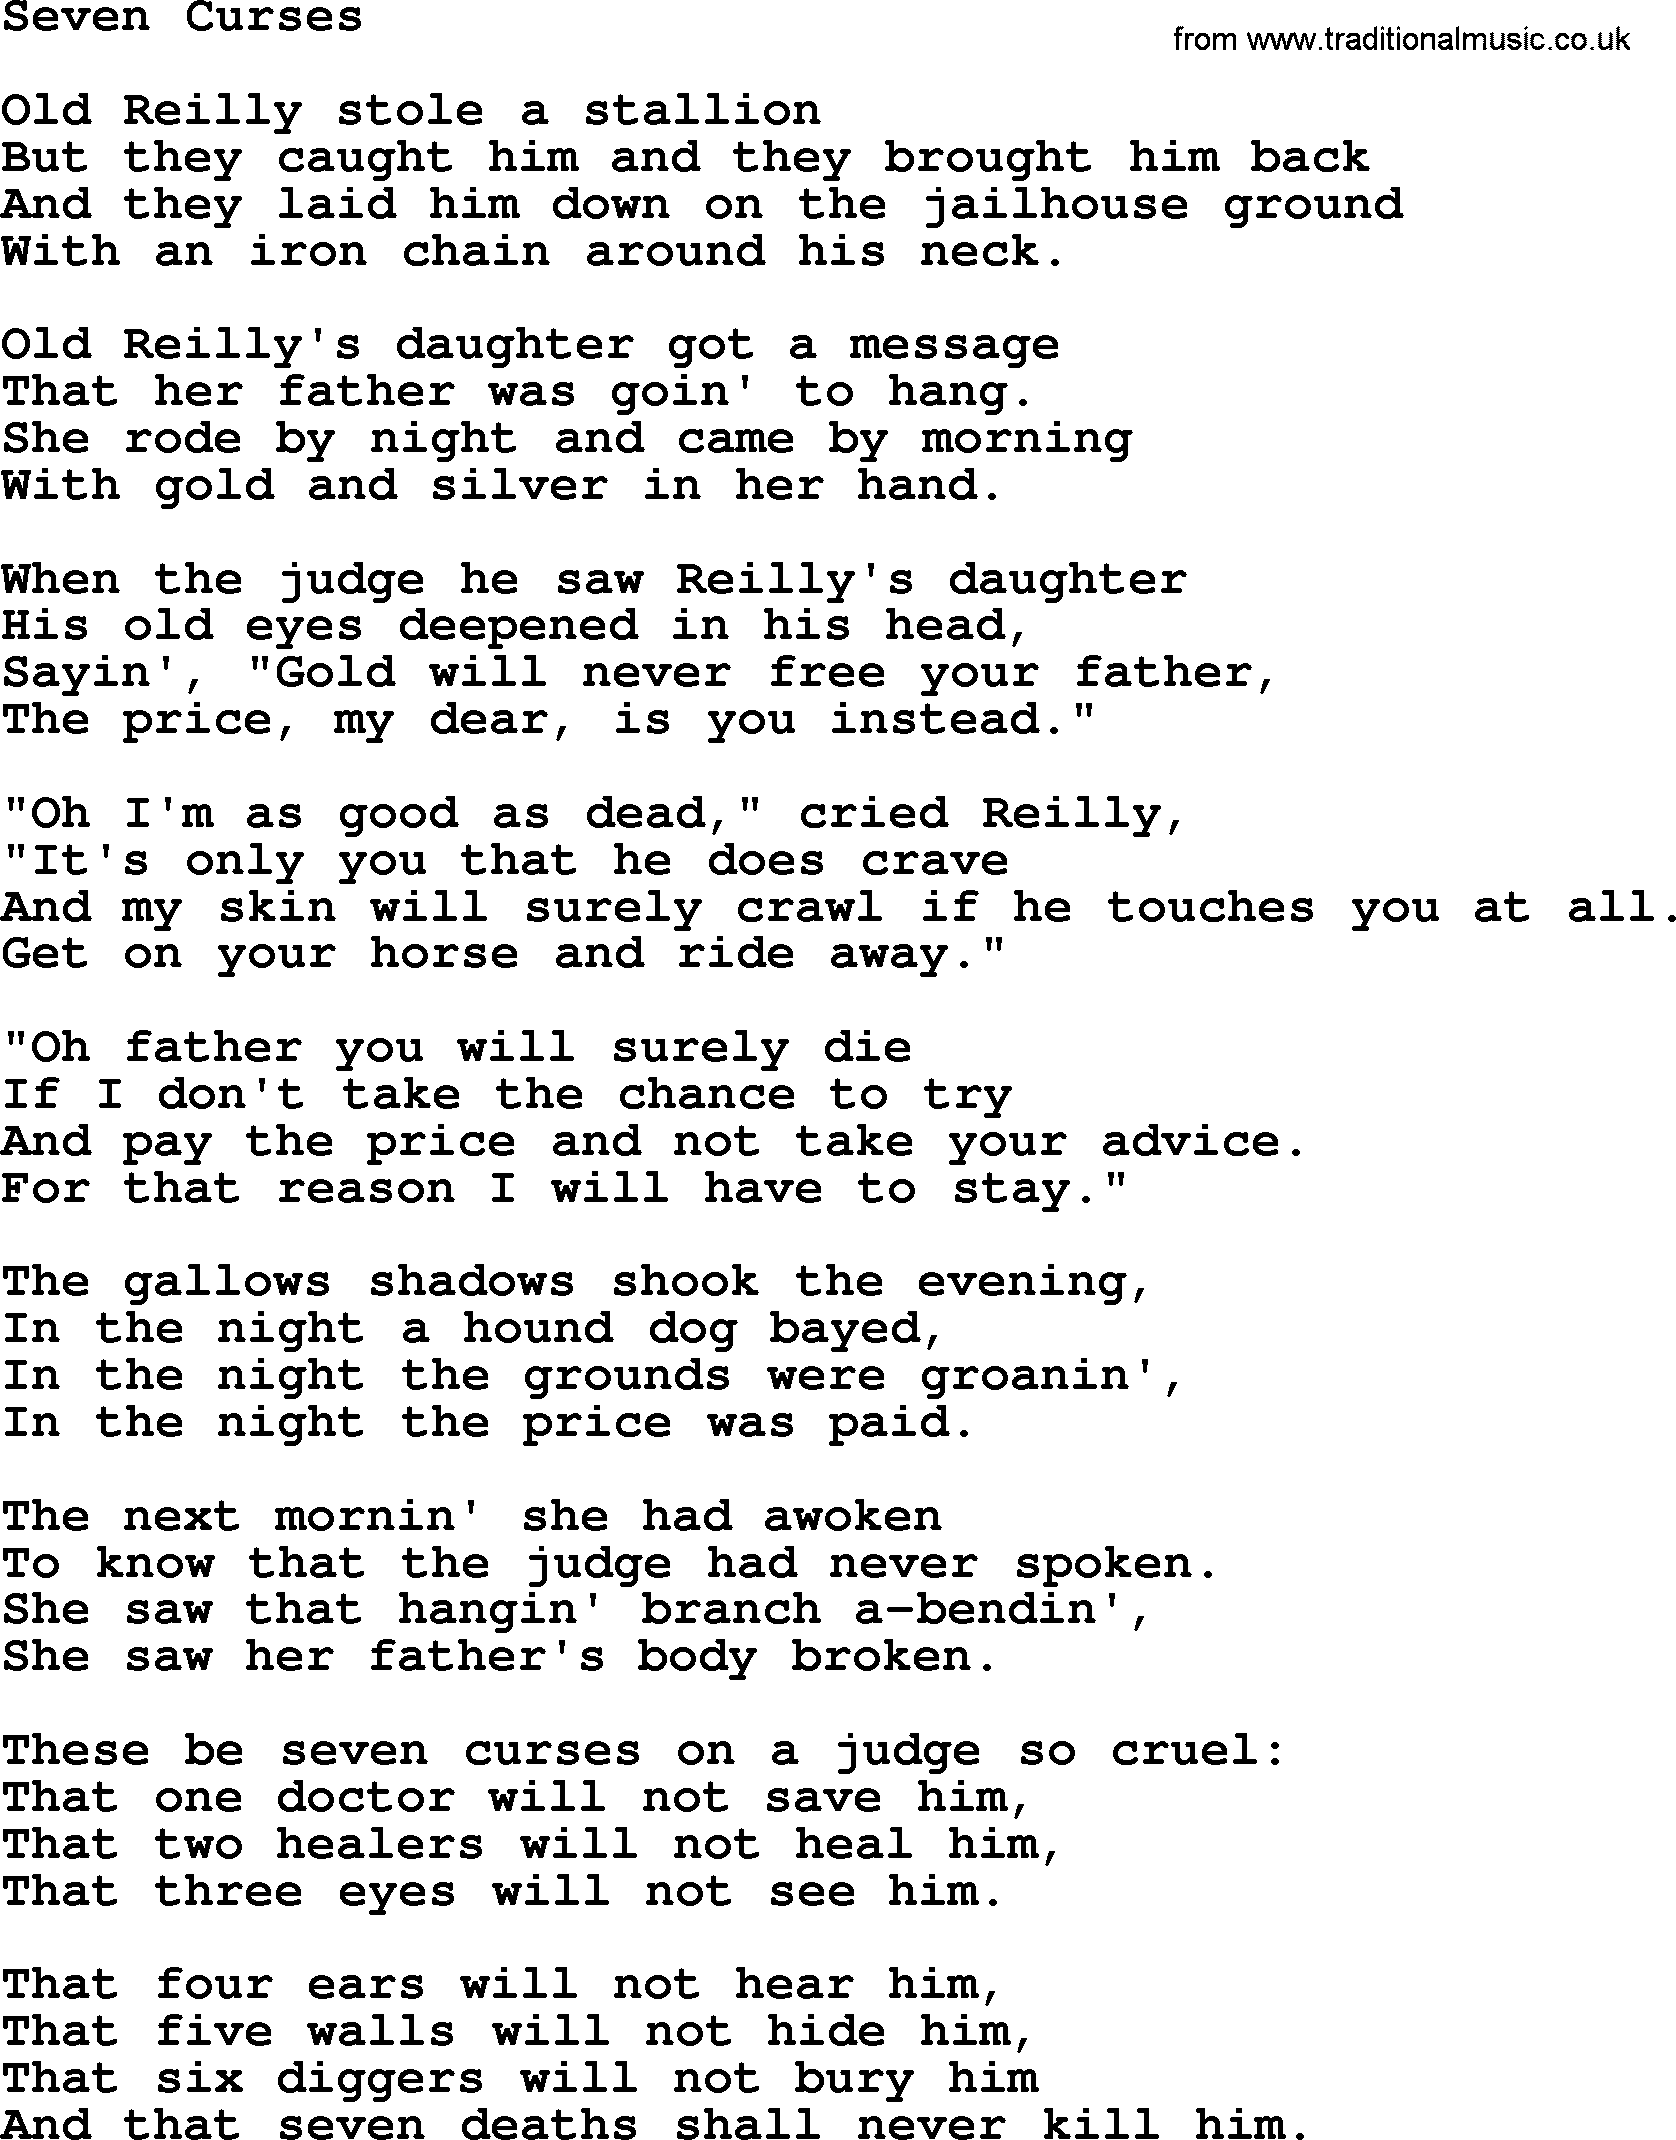 Joan Baez song Seven Curses, lyrics